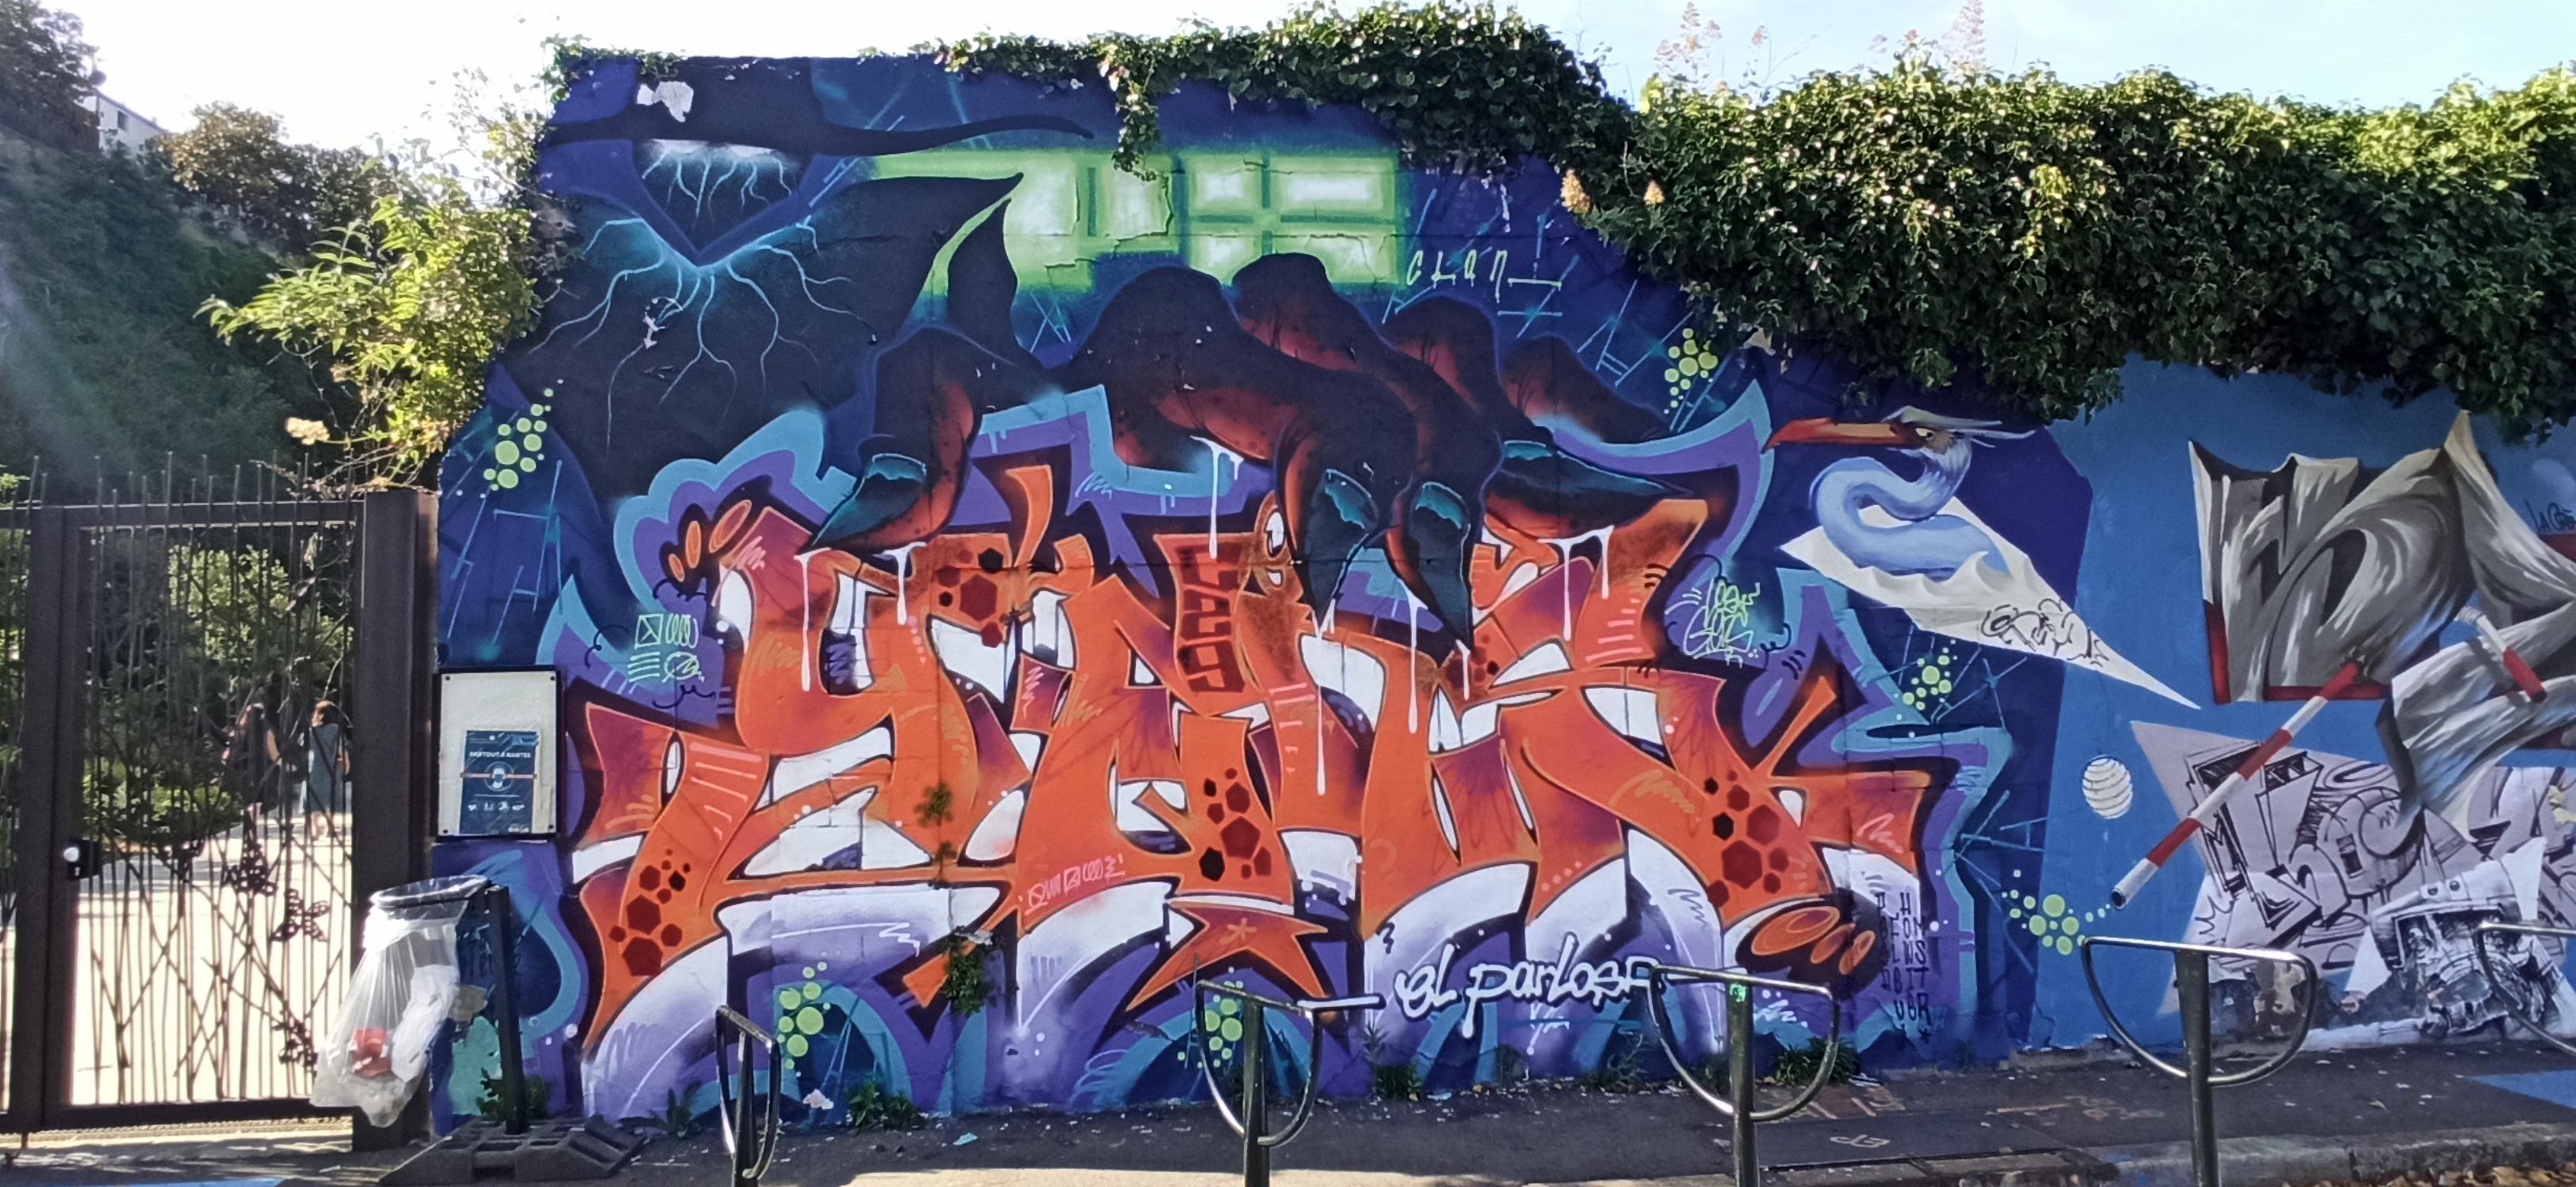 Graffiti 5119  capturé par Rabot à Nantes France